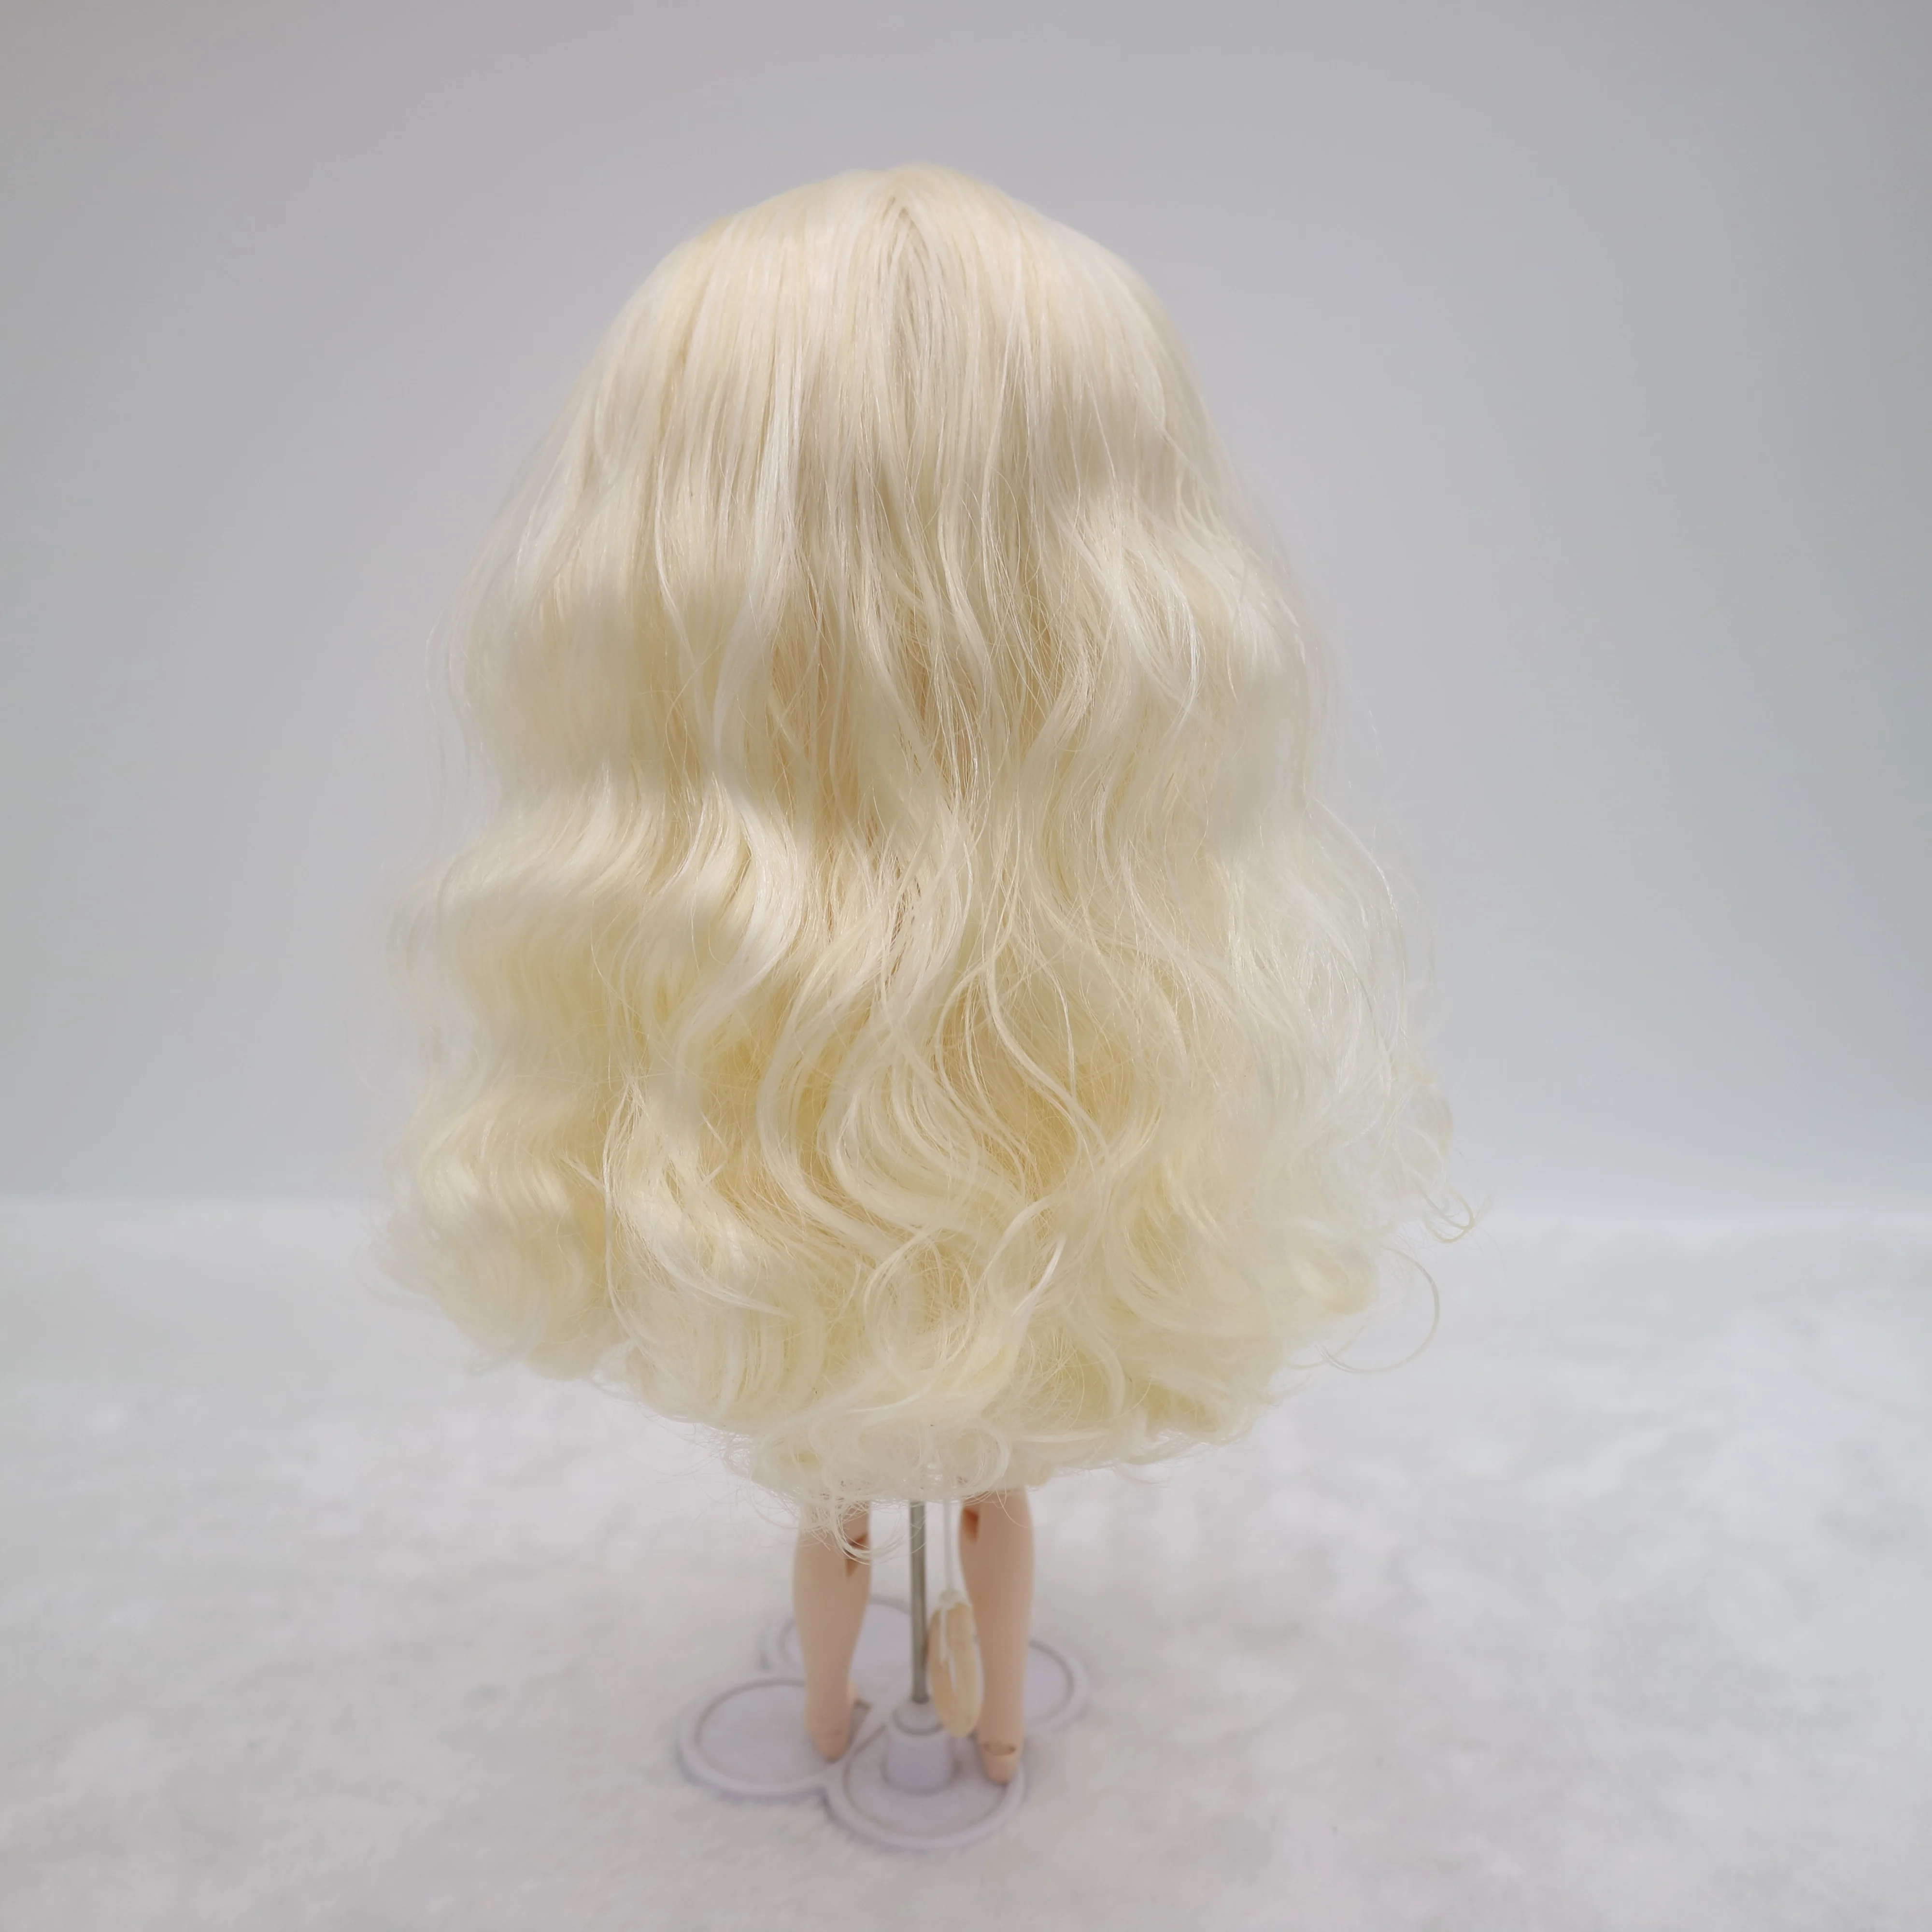 Кукла Blyth на заказ . куклы длиной 30 см со светлыми волосами Изображение 5